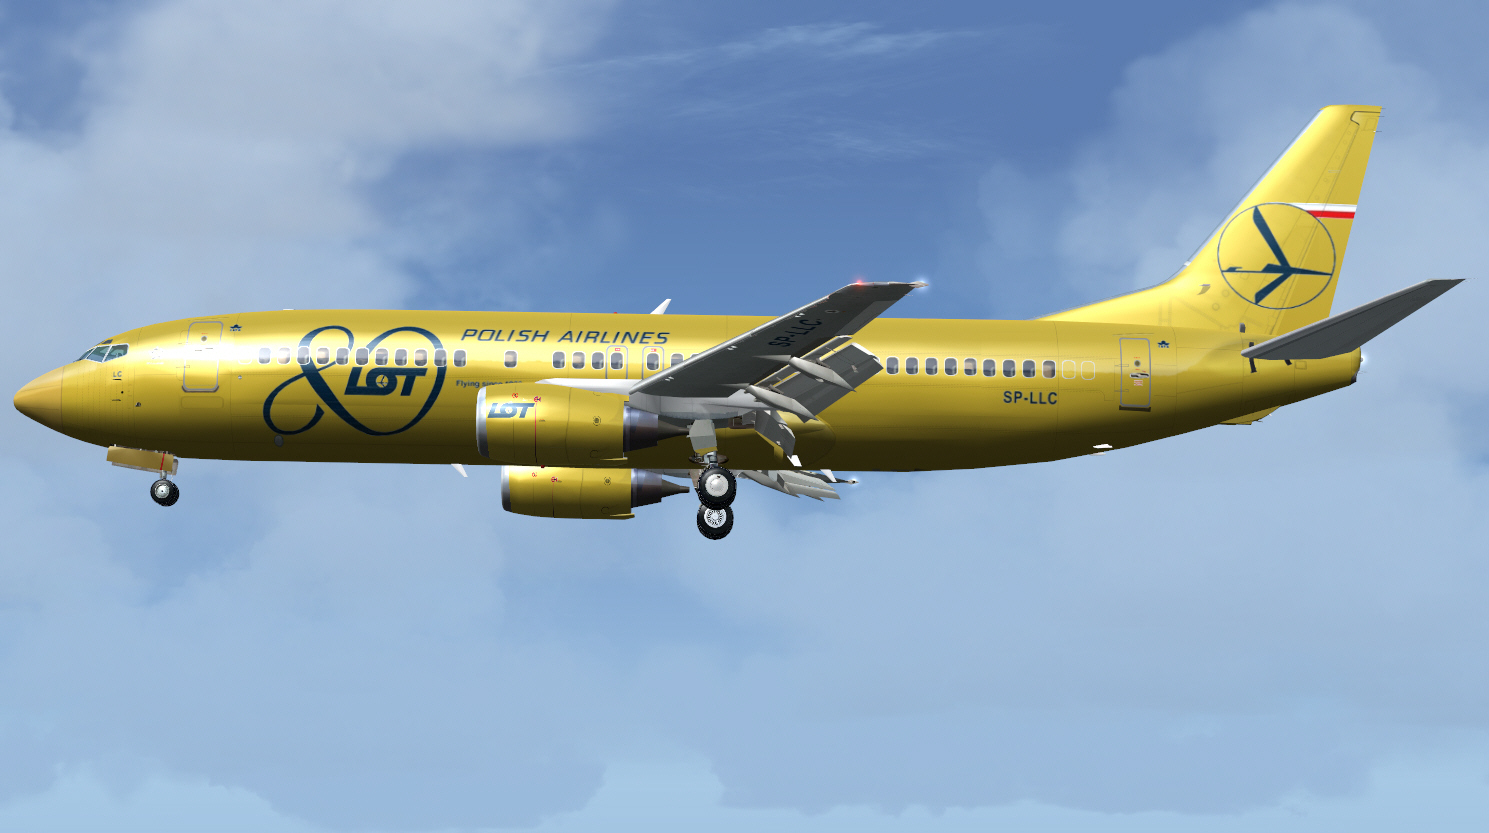 737-400